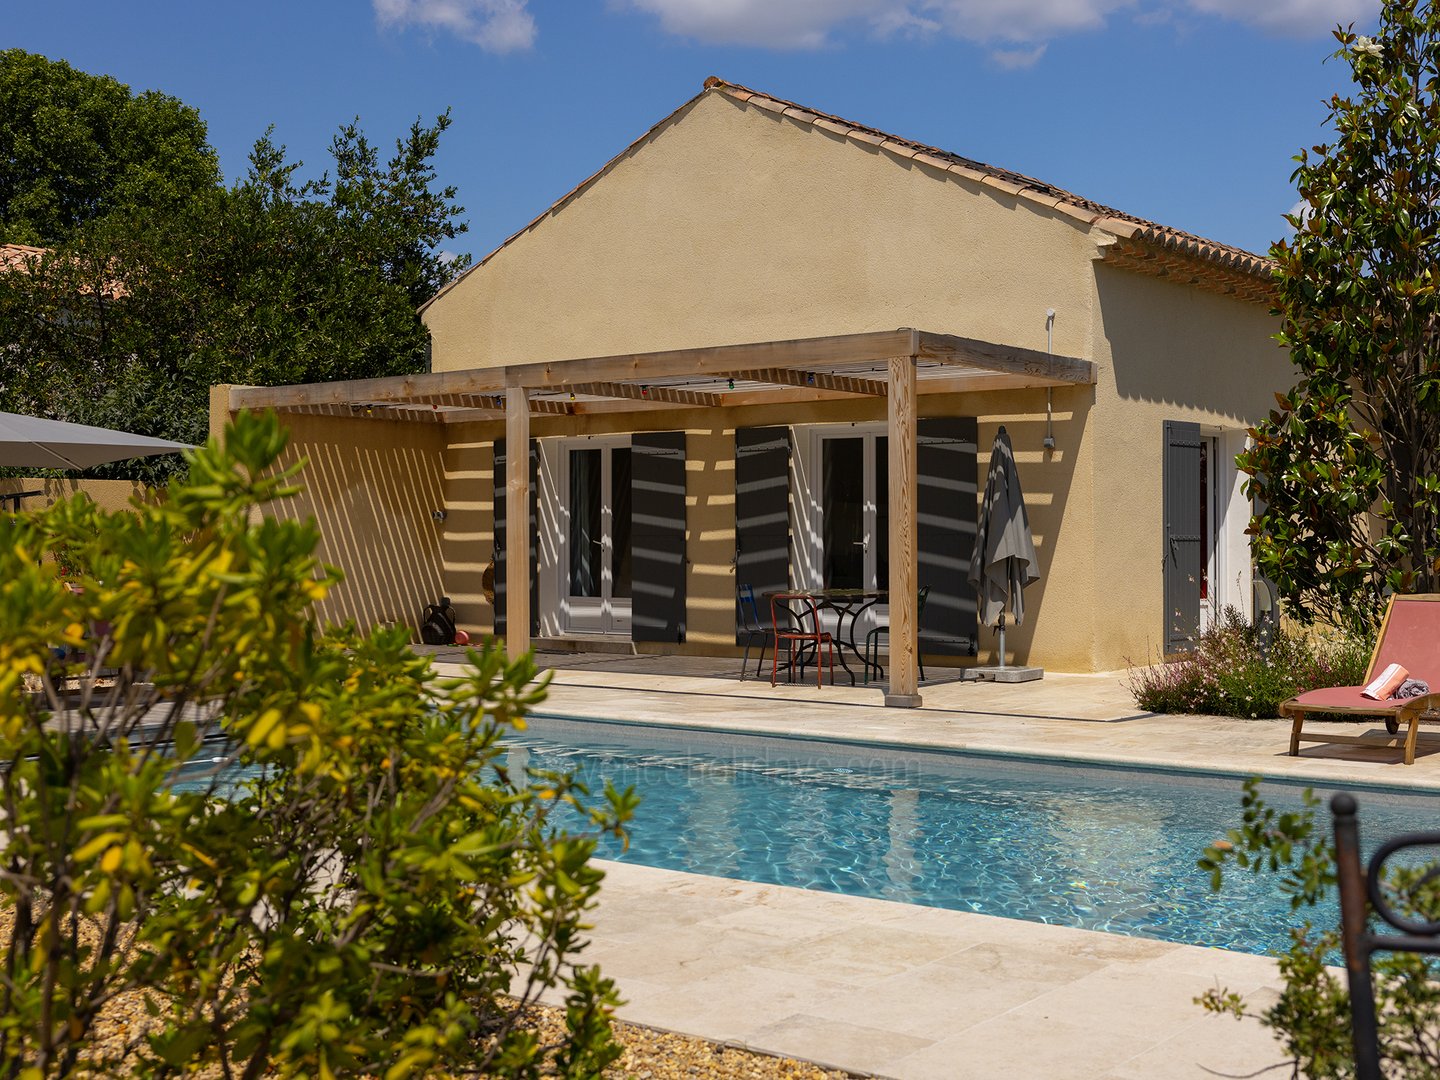 34 - La Maison de Village: Villa: Pool - Uitzicht op het gastenverblijf